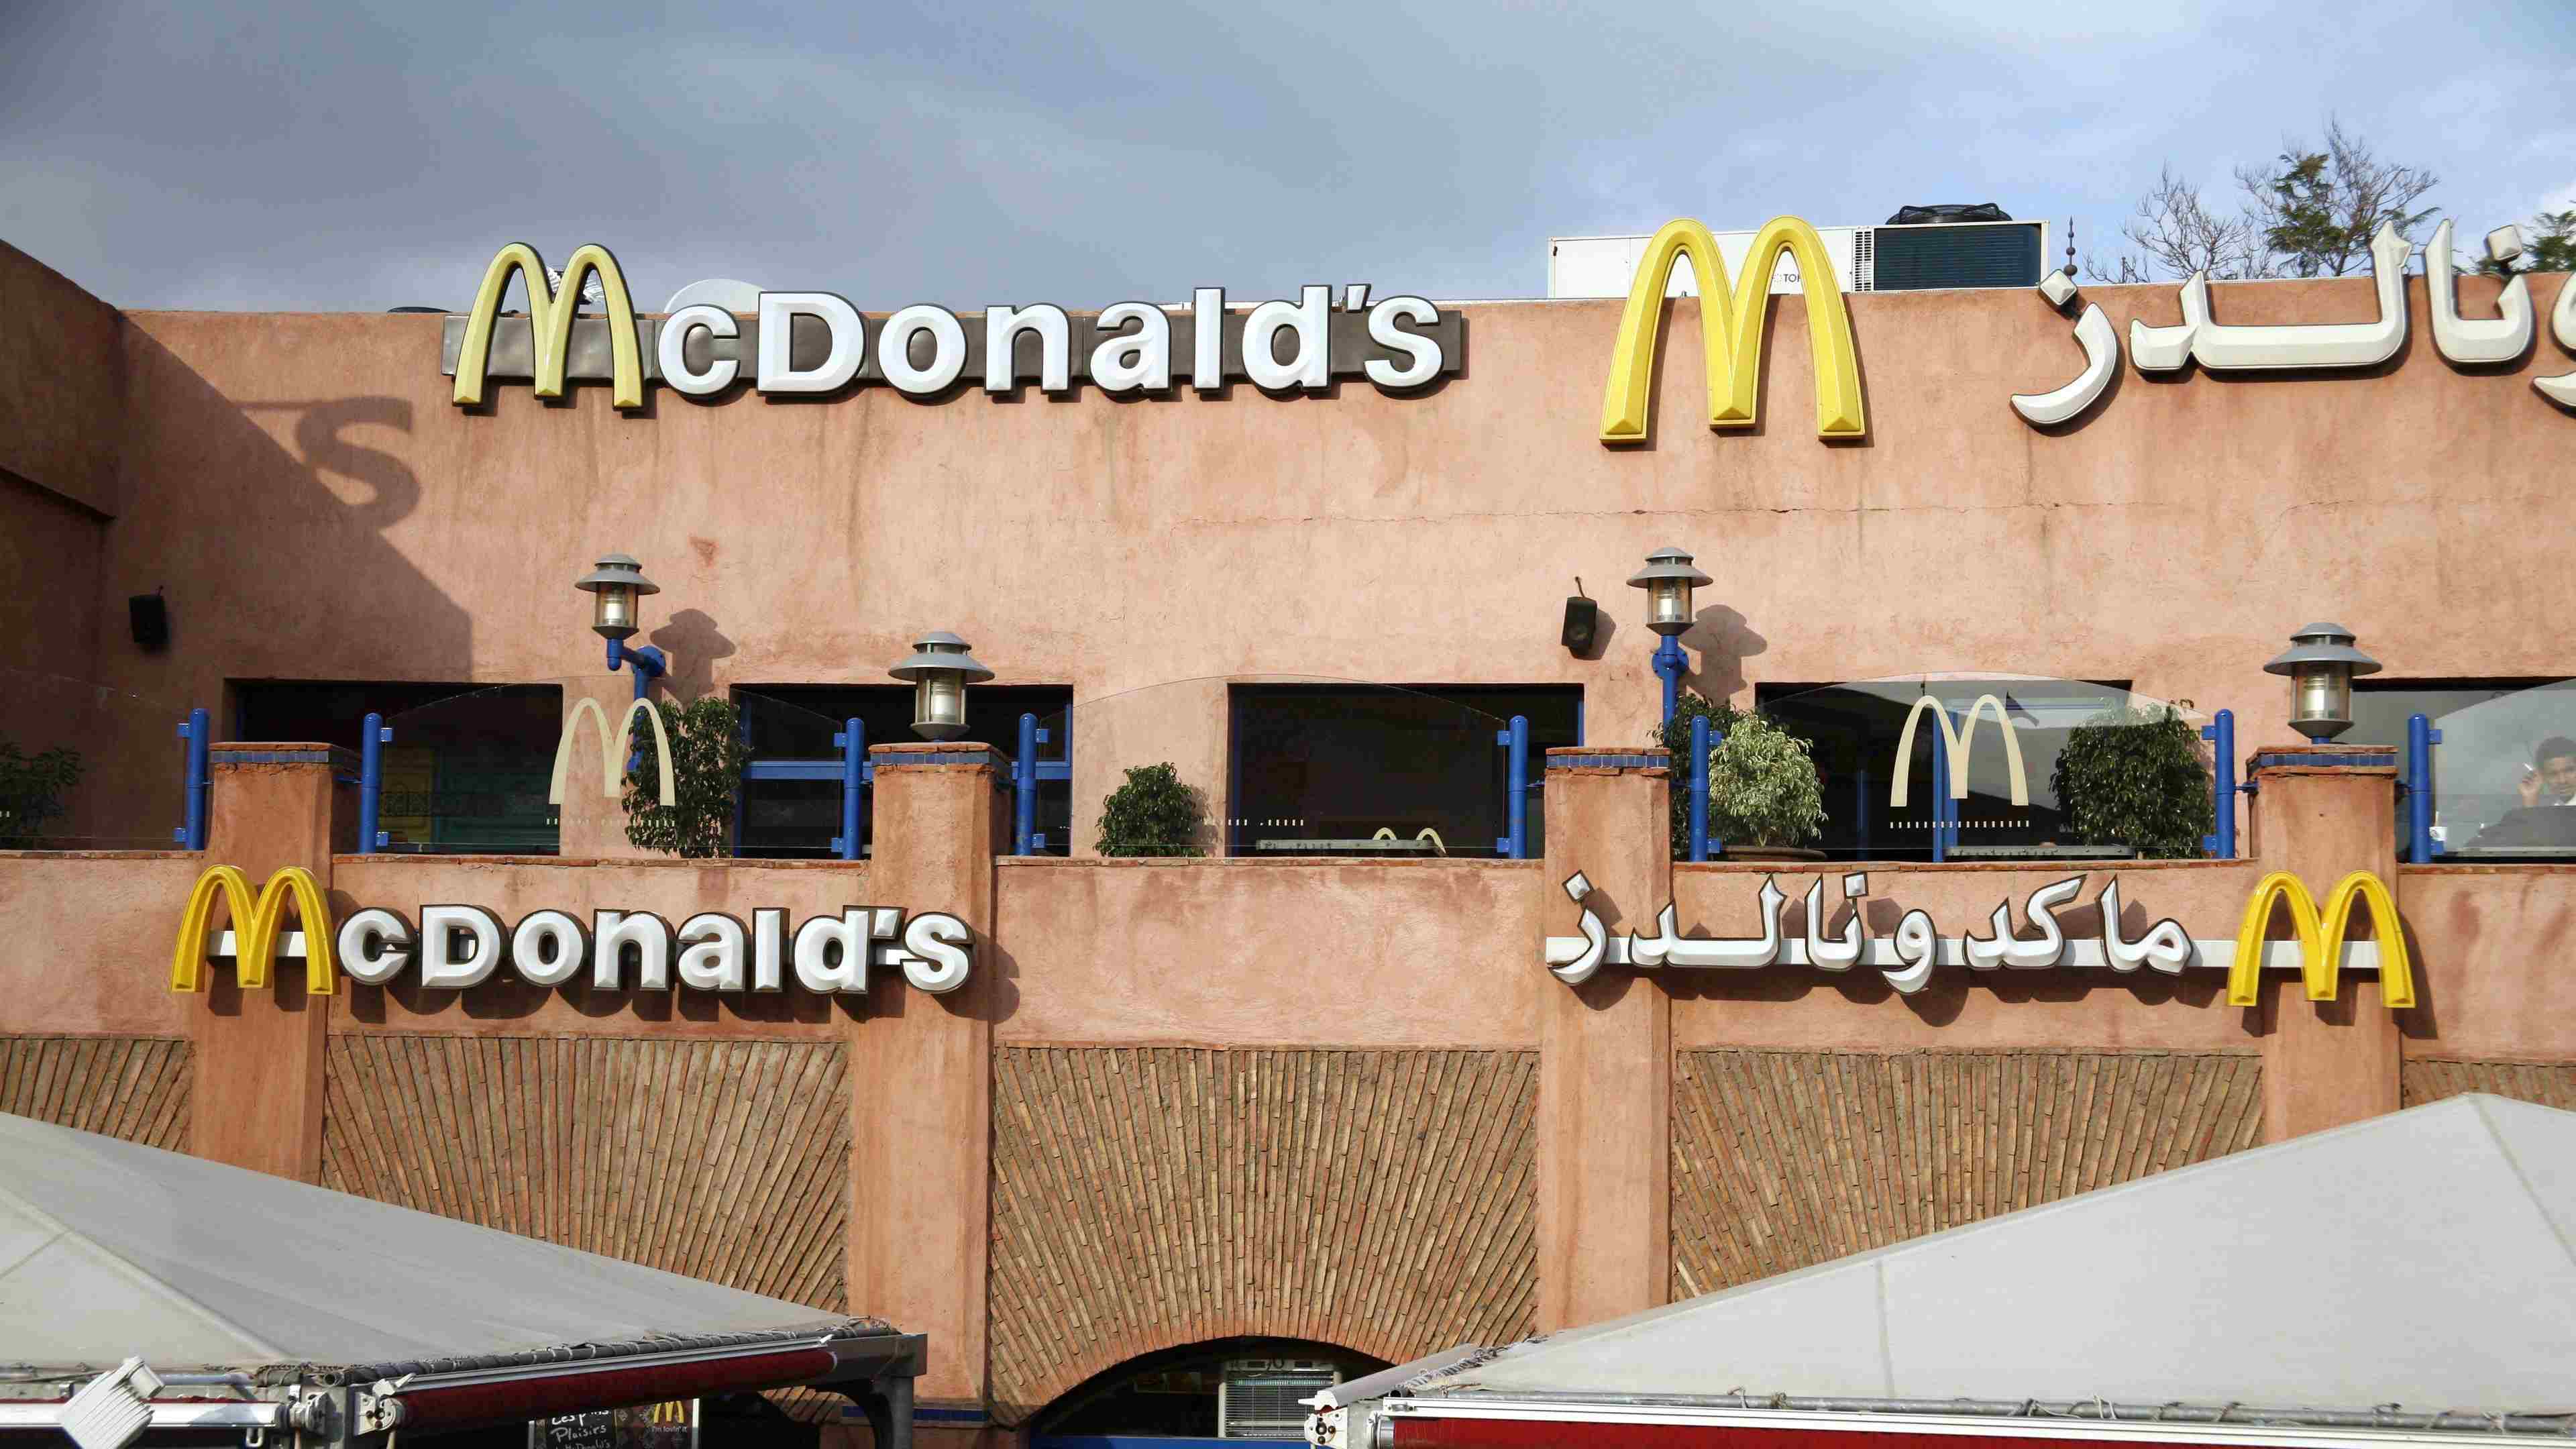  Macdonalds à Marrakech